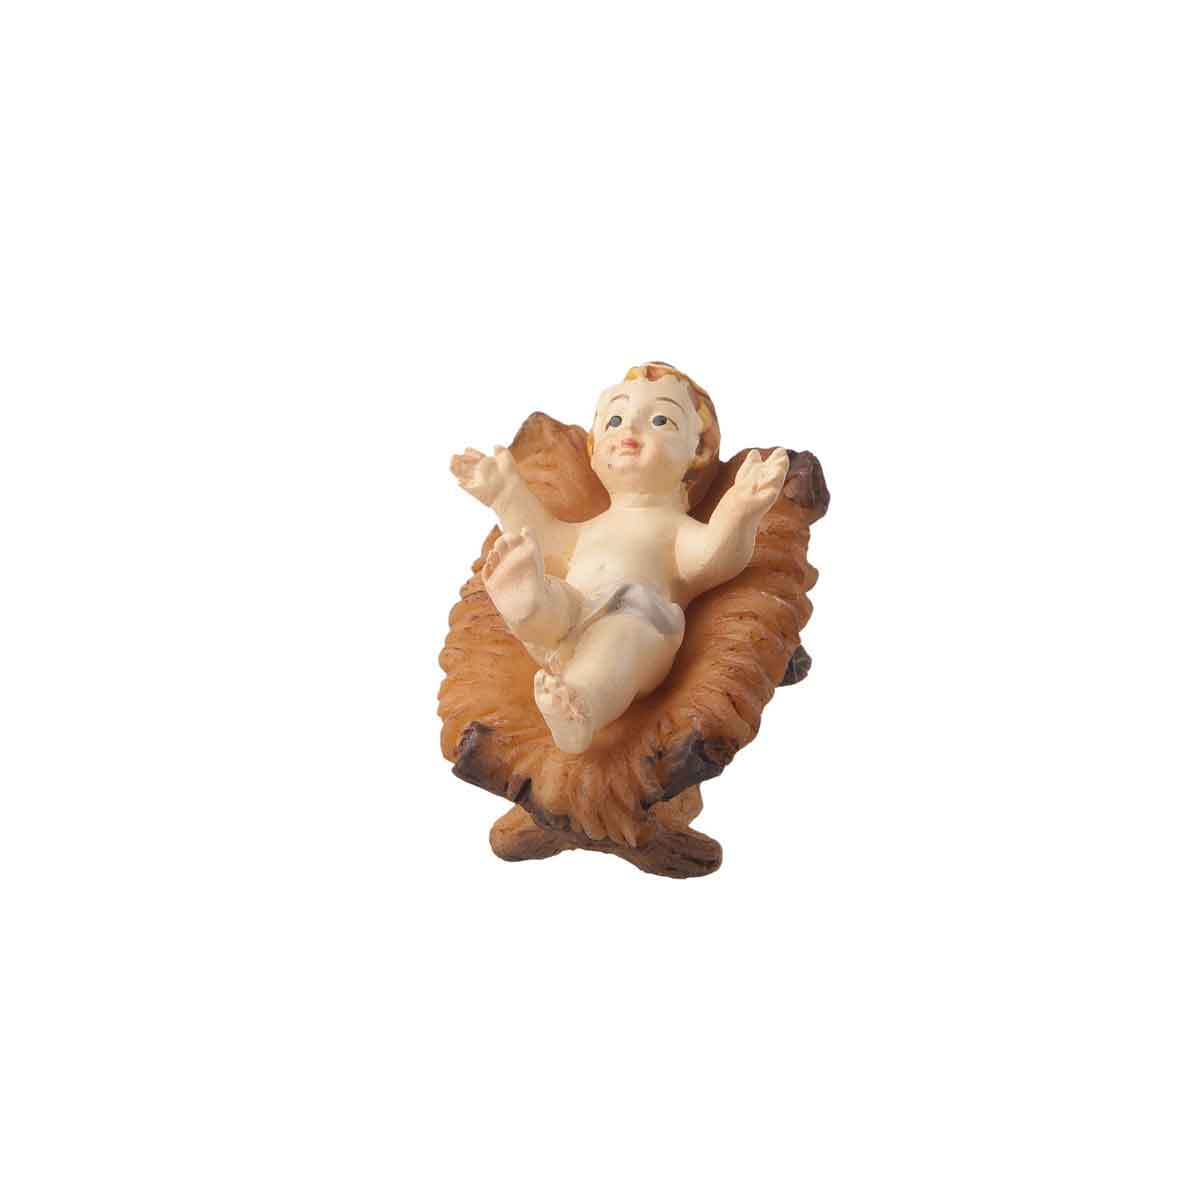 Presepe – Statuetta Gesù bambino in culla altezza 9cm